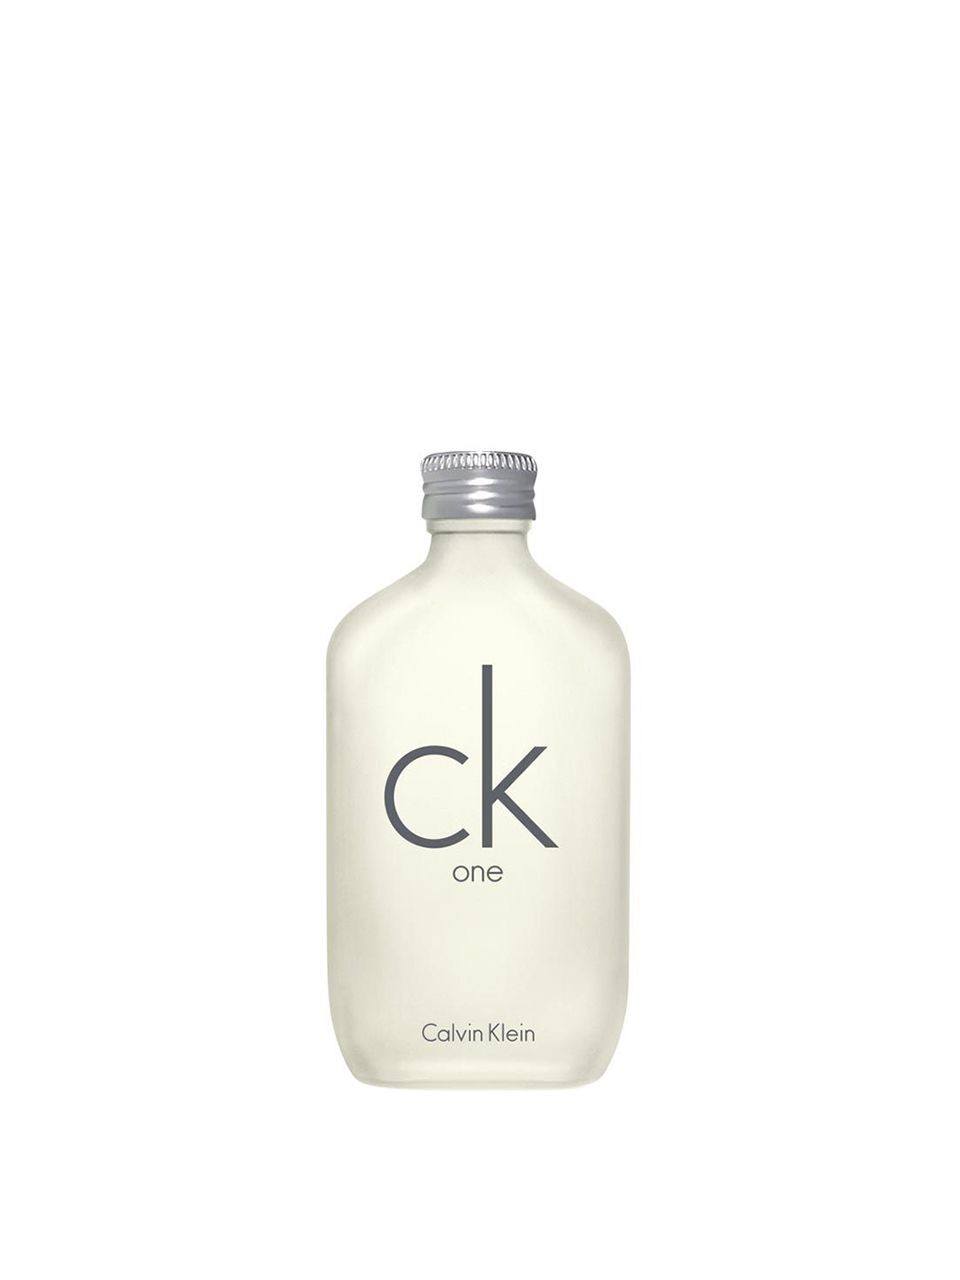 CK One Eau de Toilette 50 ml